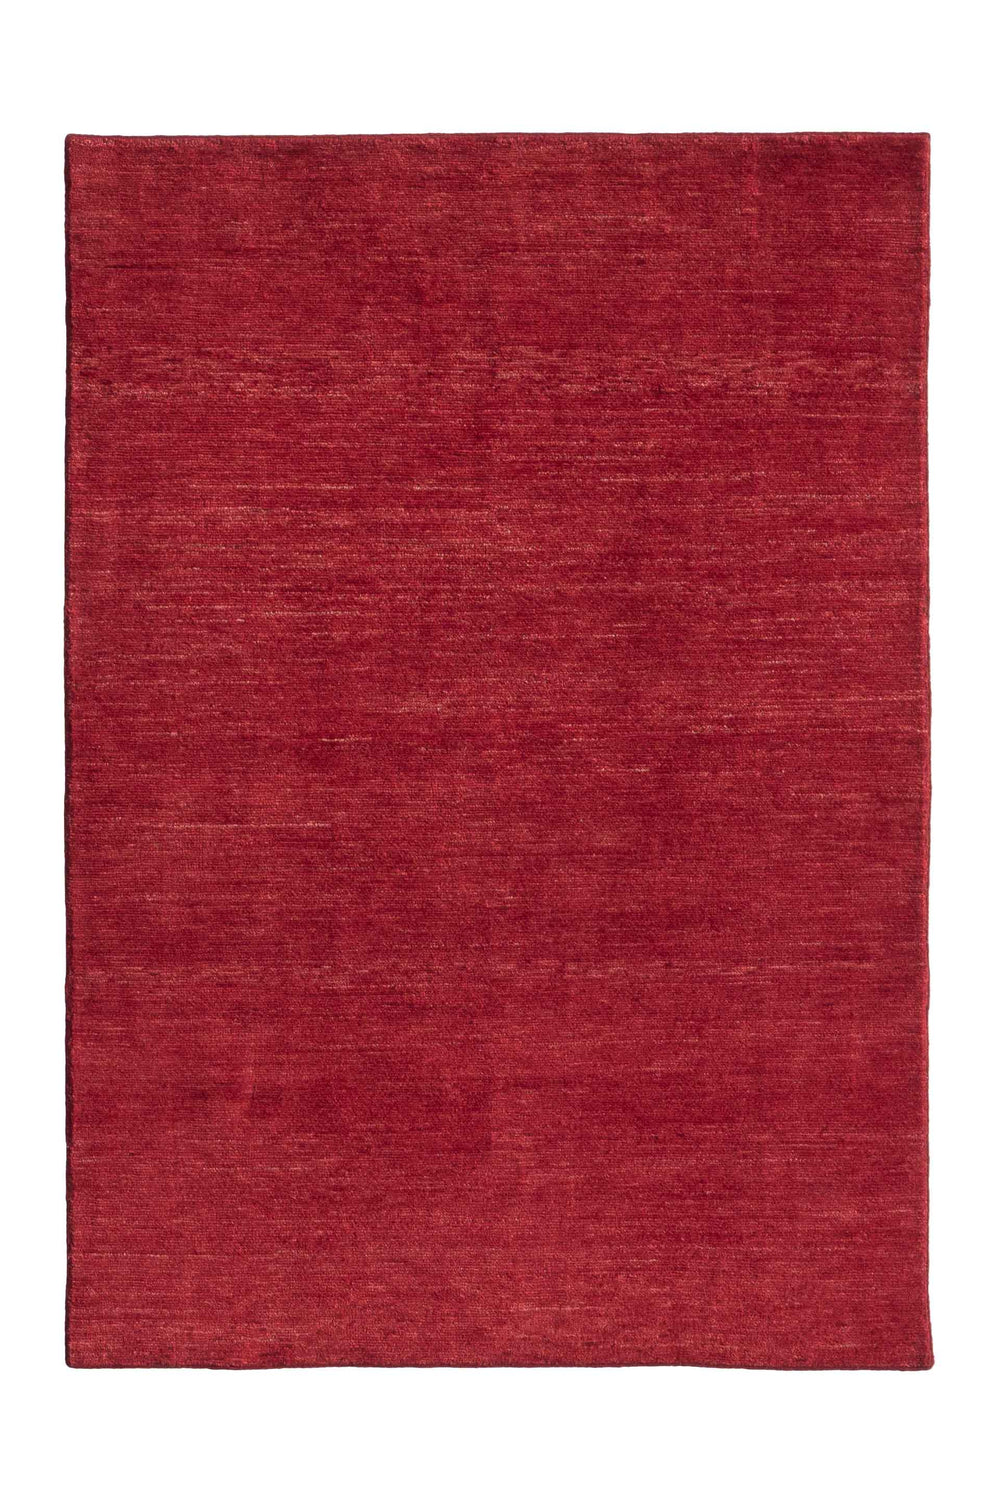 Persian Colors Scarlet Rug